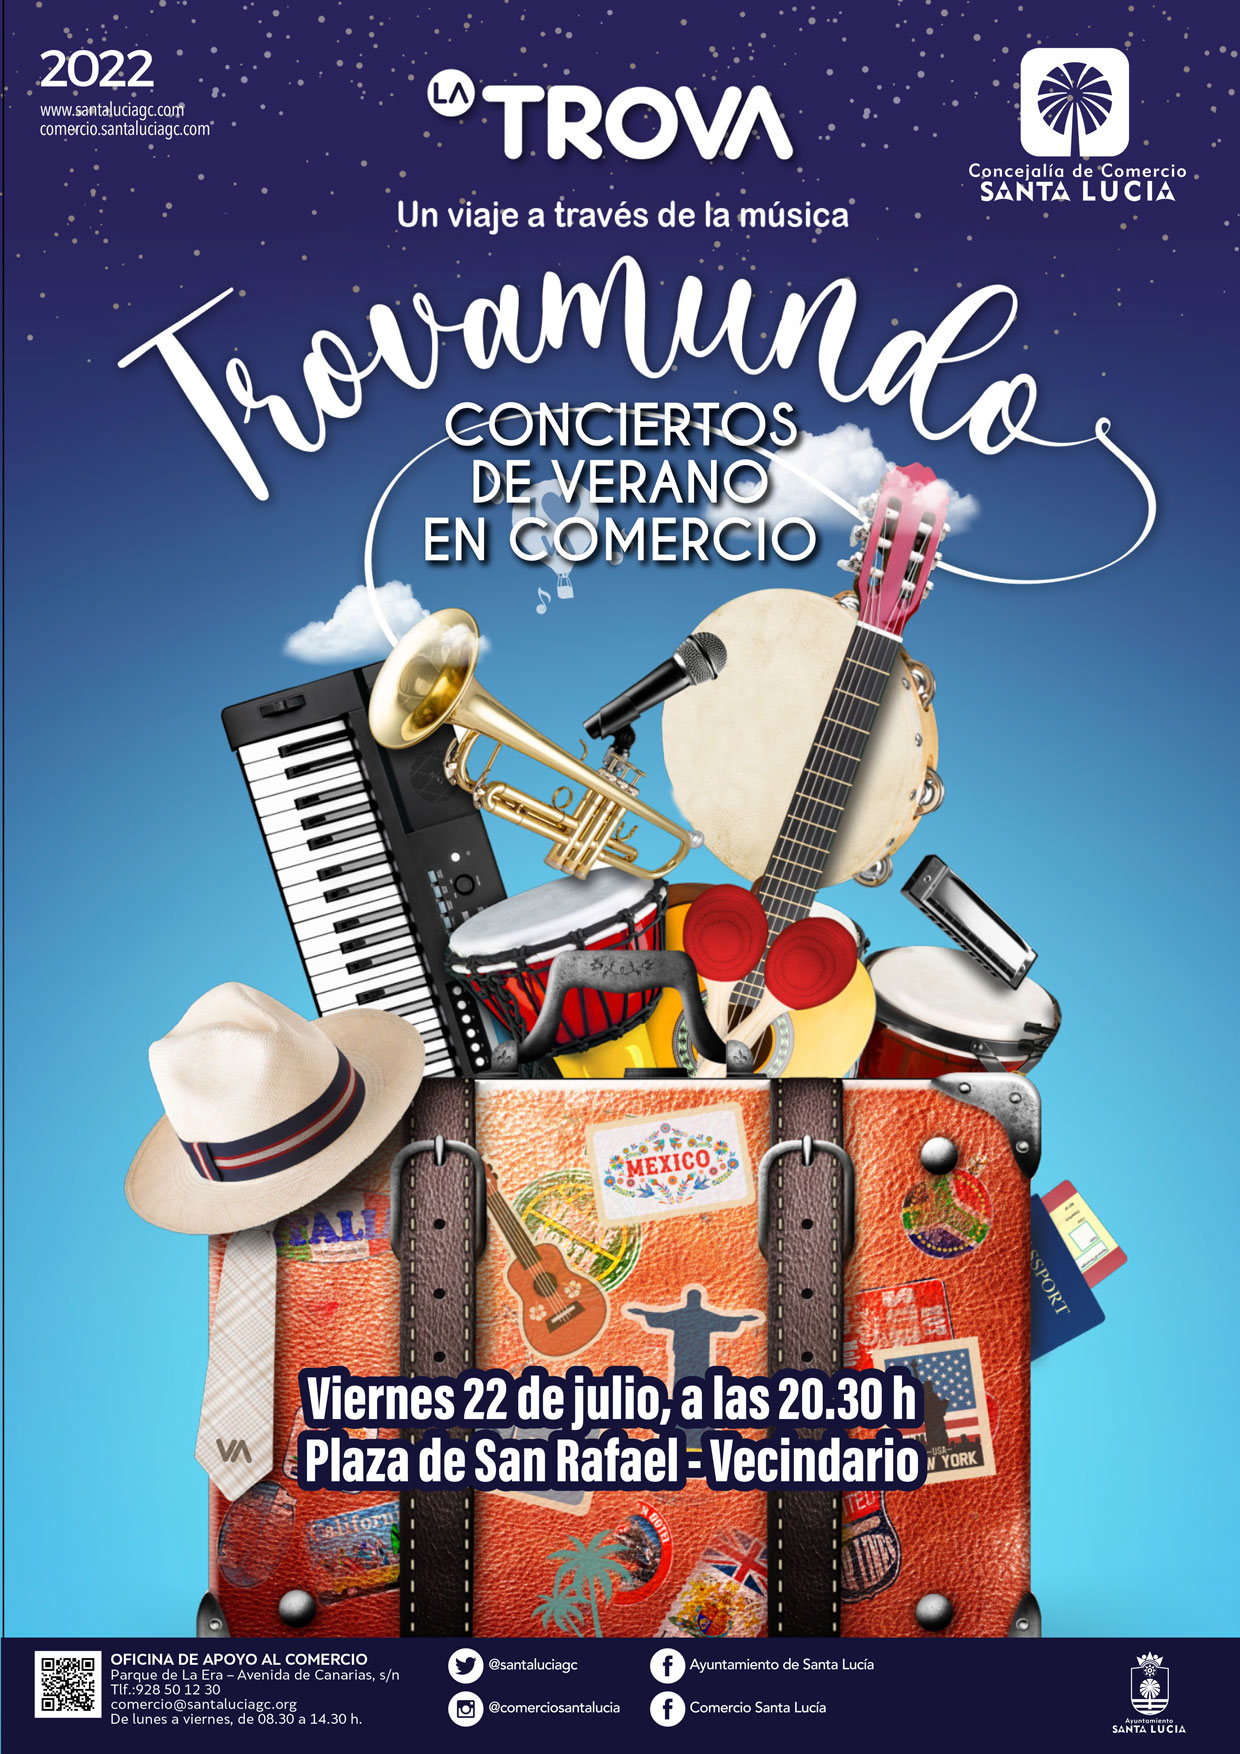 Música de La Trova, los Salvapantallas, tributo a Juan Luis Guerra y espectáculos familiares para animar el comercio este fin de semana en Vecindario